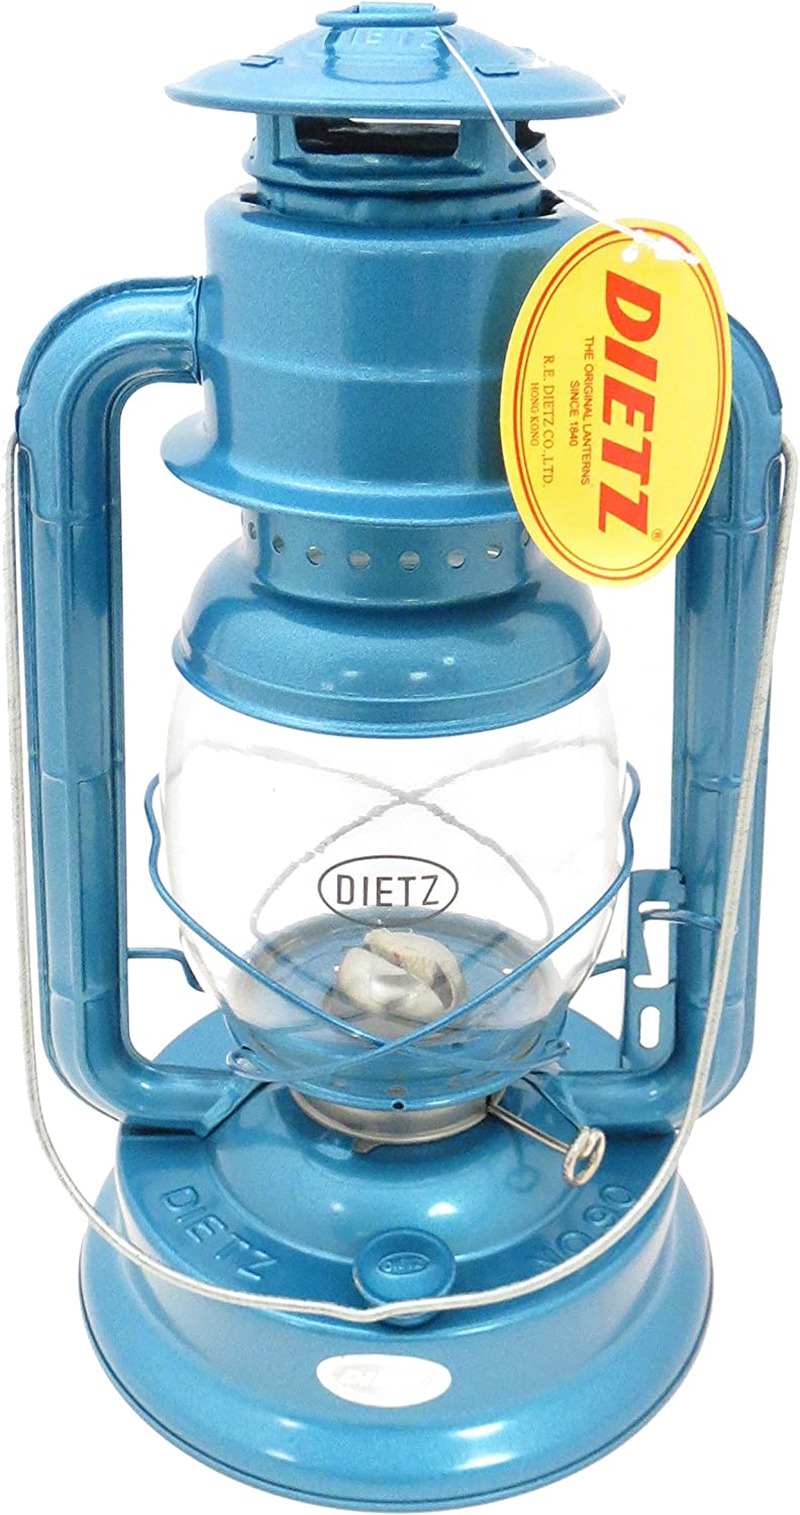 Dietz #90 D-Lite Oil Burning Lantern